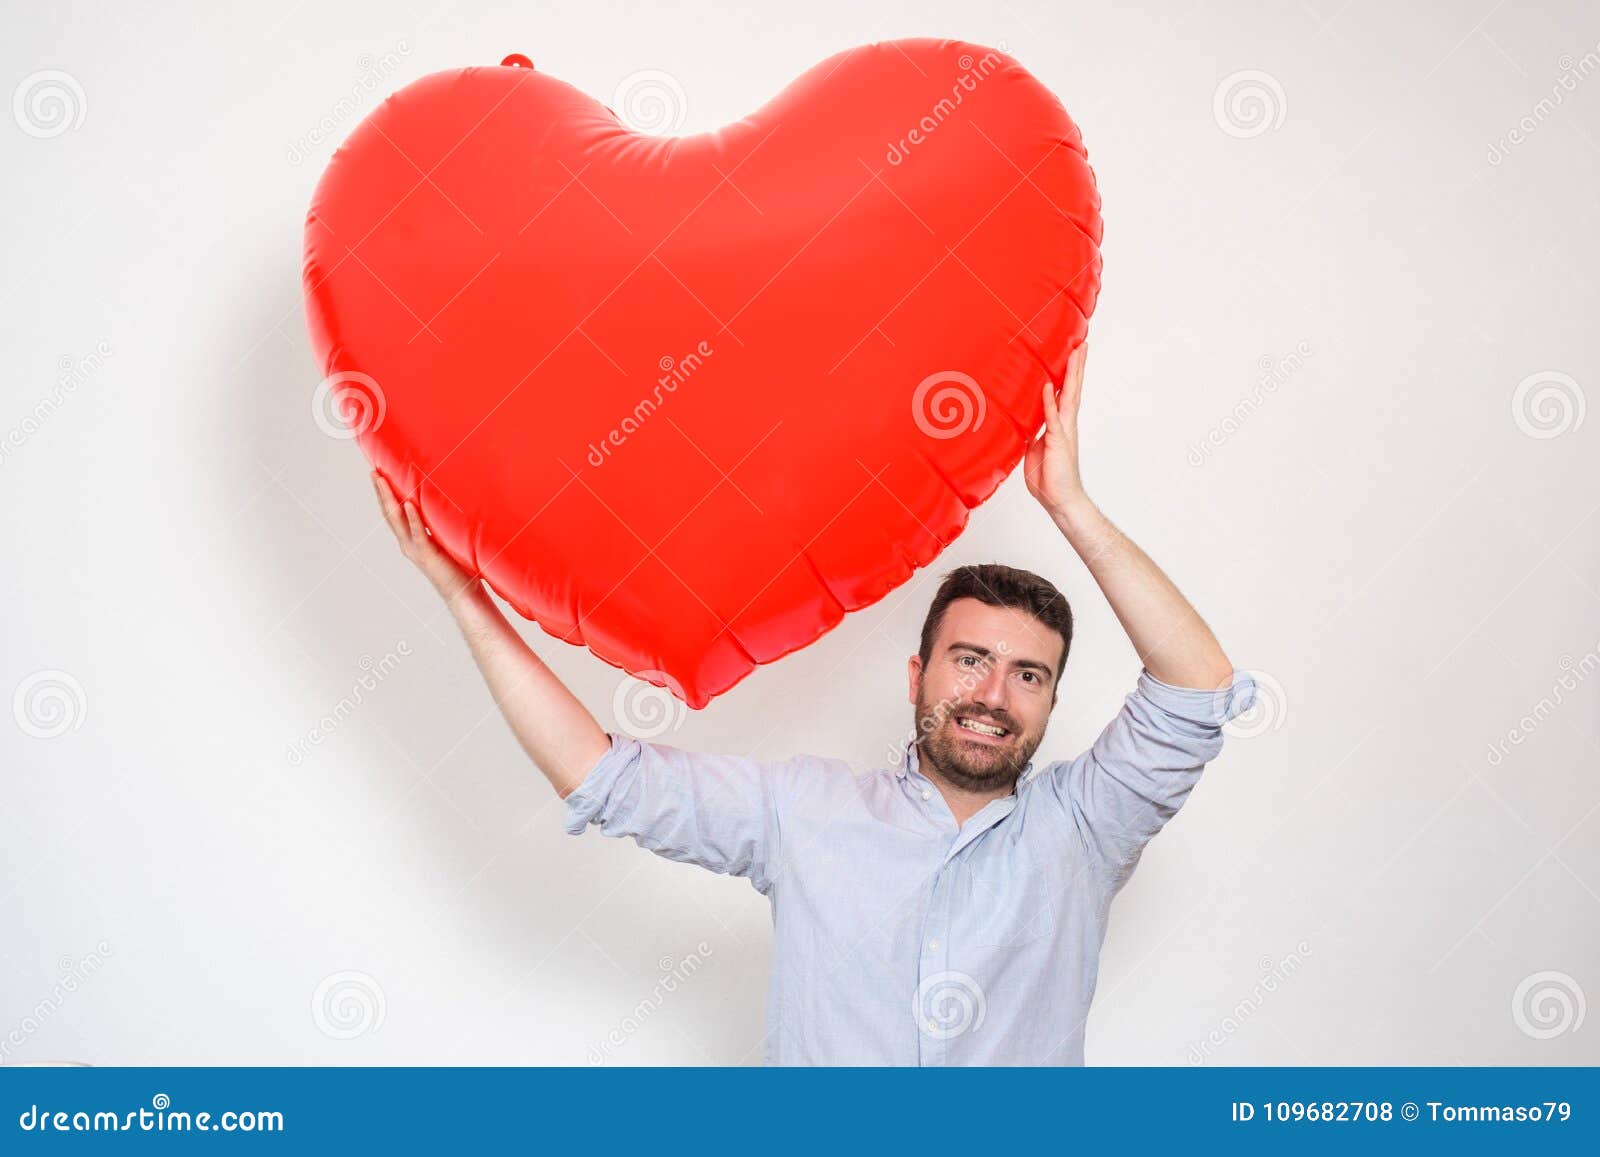 Το άτομο Enamored που αγκαλιάζει μια μεγάλη καρδιά διαμόρφωσε το κόκκινο  μπαλόνι Στοκ Εικόνες - εικόνα από : 109682708